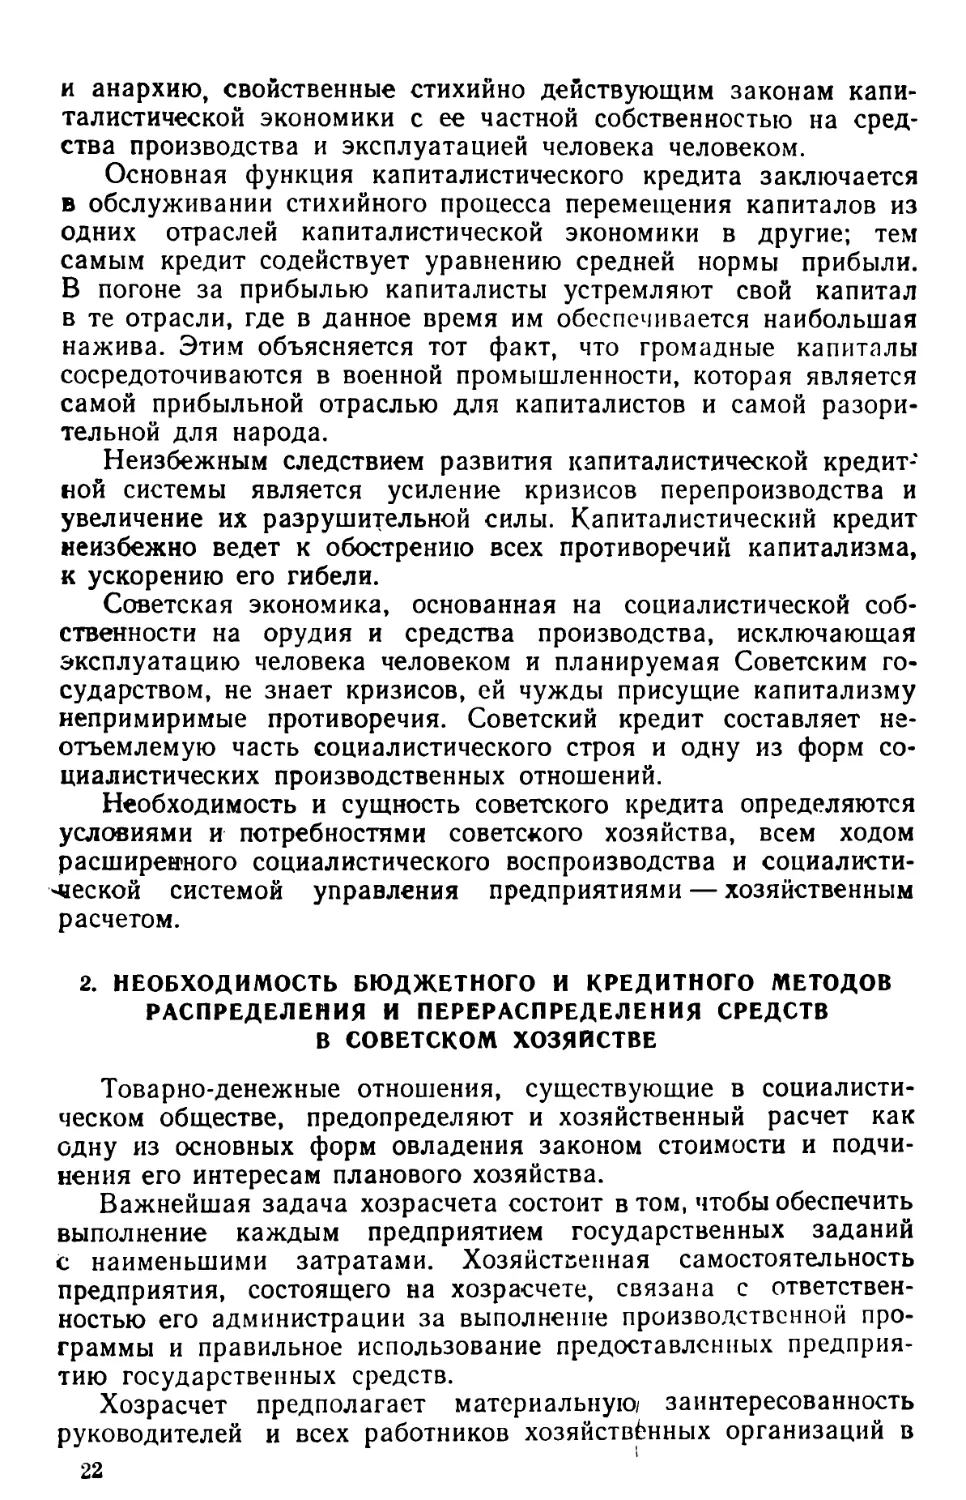 2. Необходимость бюджетного и кредитного методов распределения и перераспределения средств в советском хозяйстве